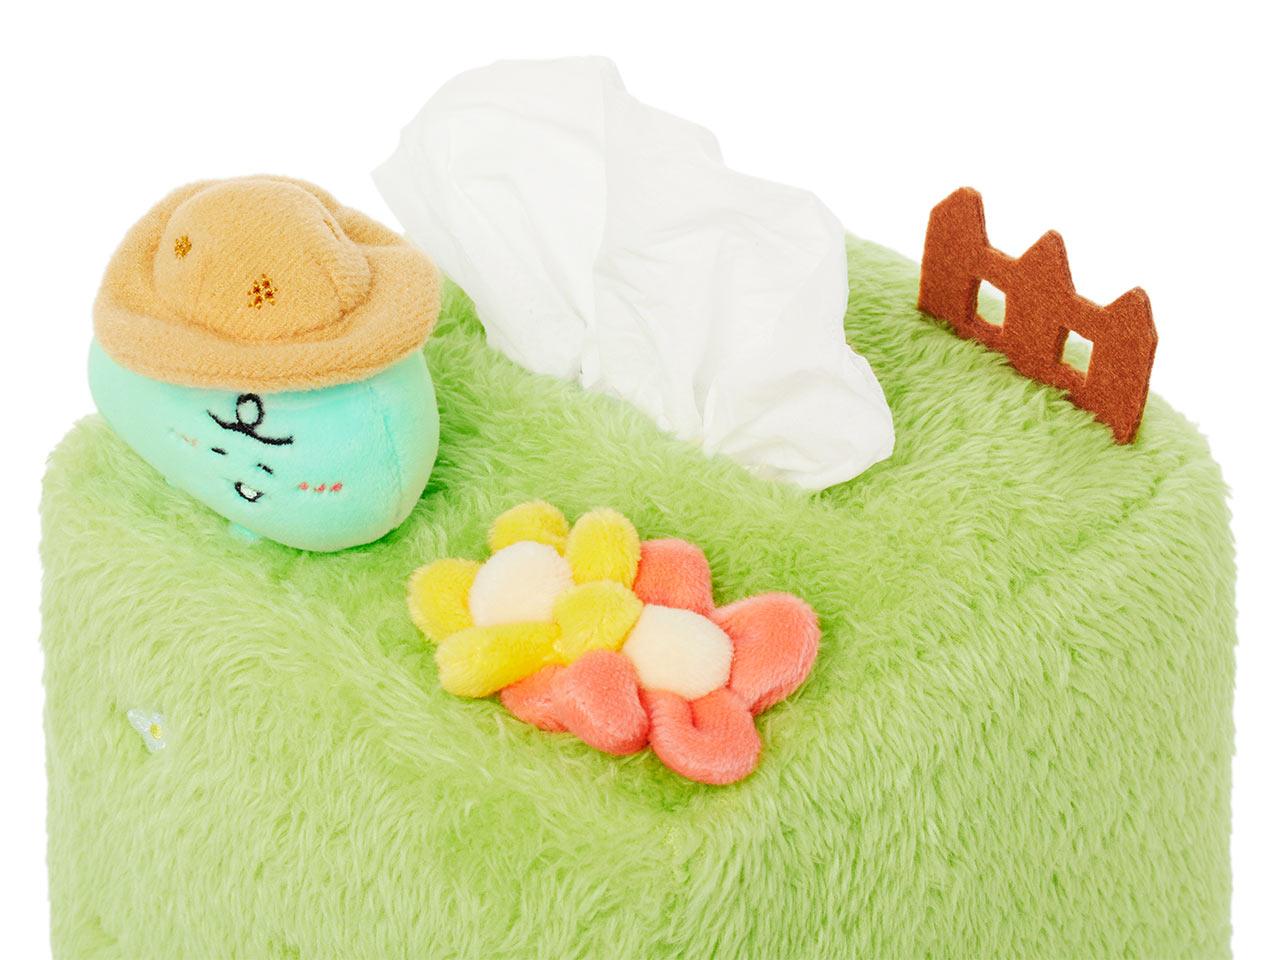 Kakao Friends Jordy Mini Tissue Case 迷你紙巾盒 - SOUL SIMPLE HK